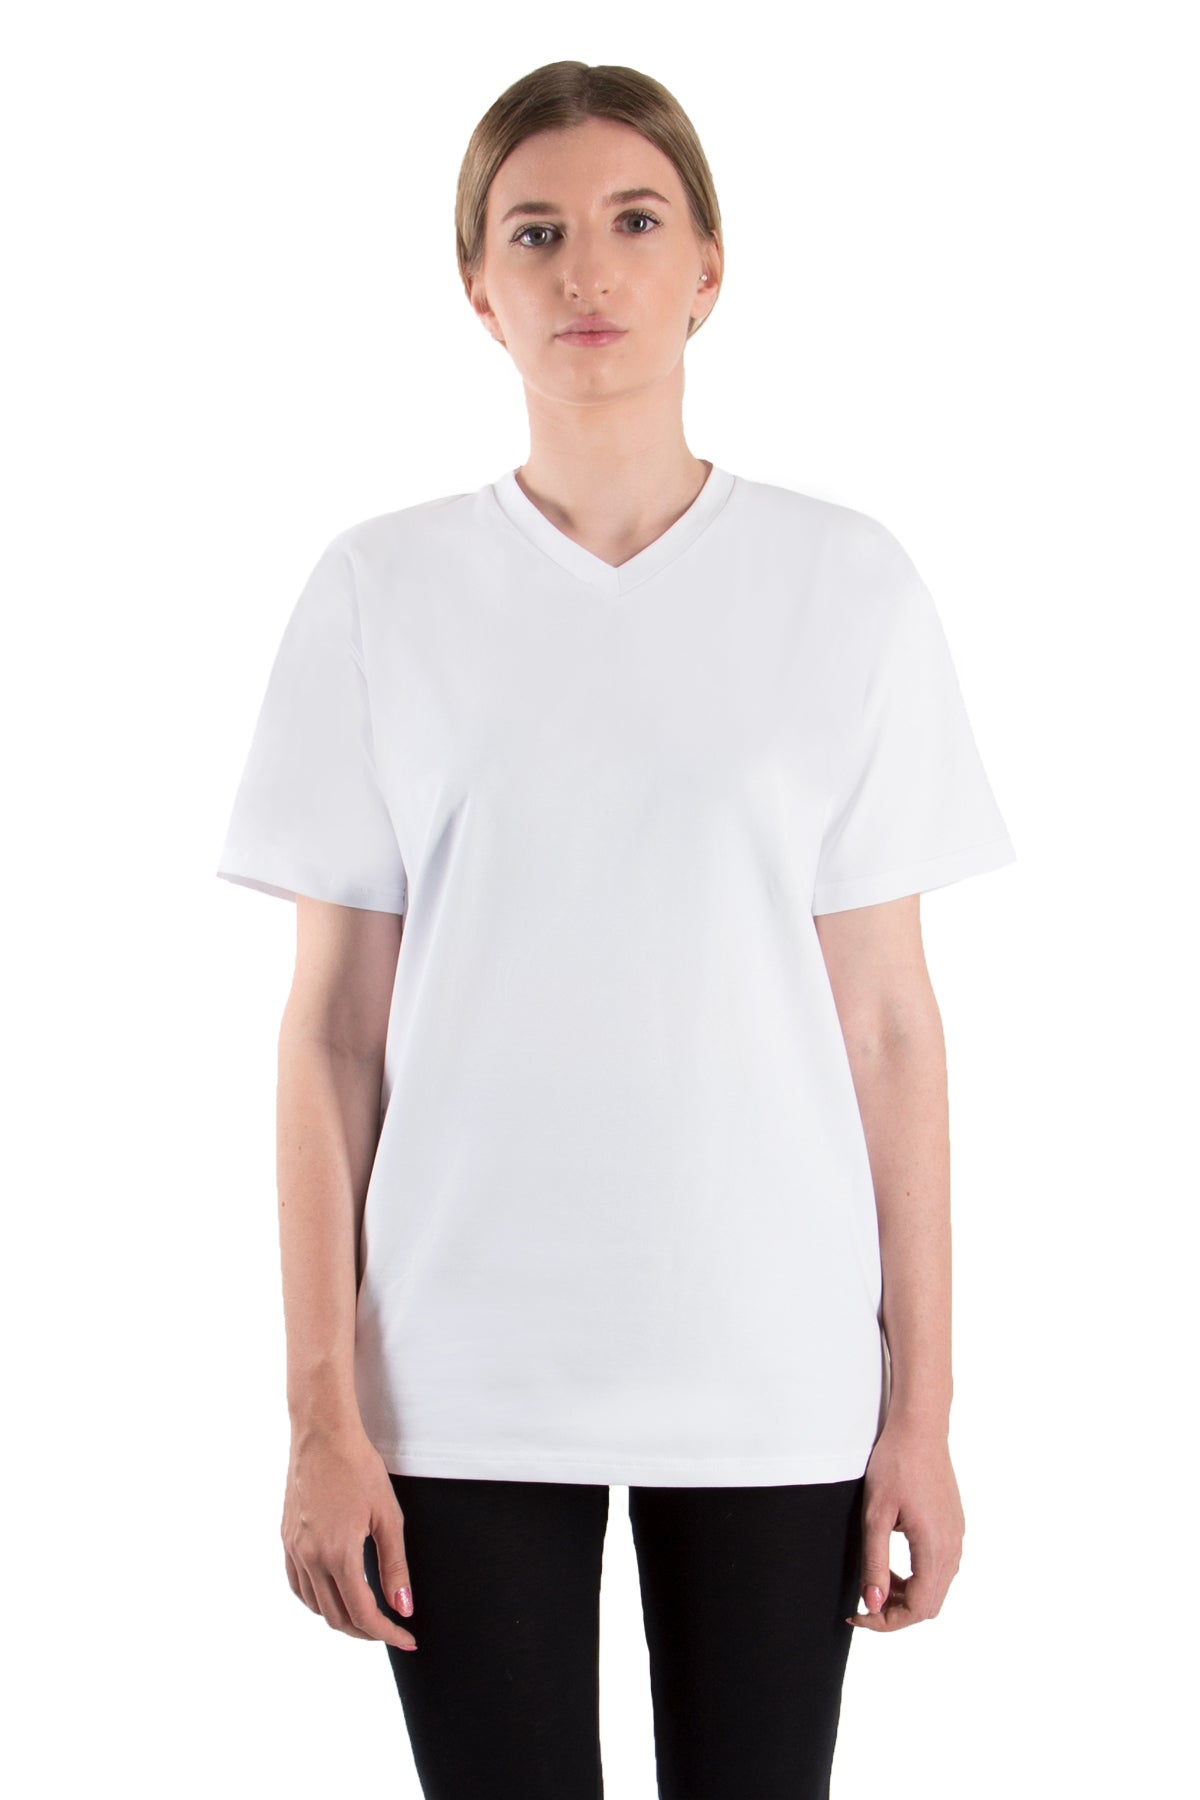 T-Shirt V-Neck (10er-Pack) - nightblue